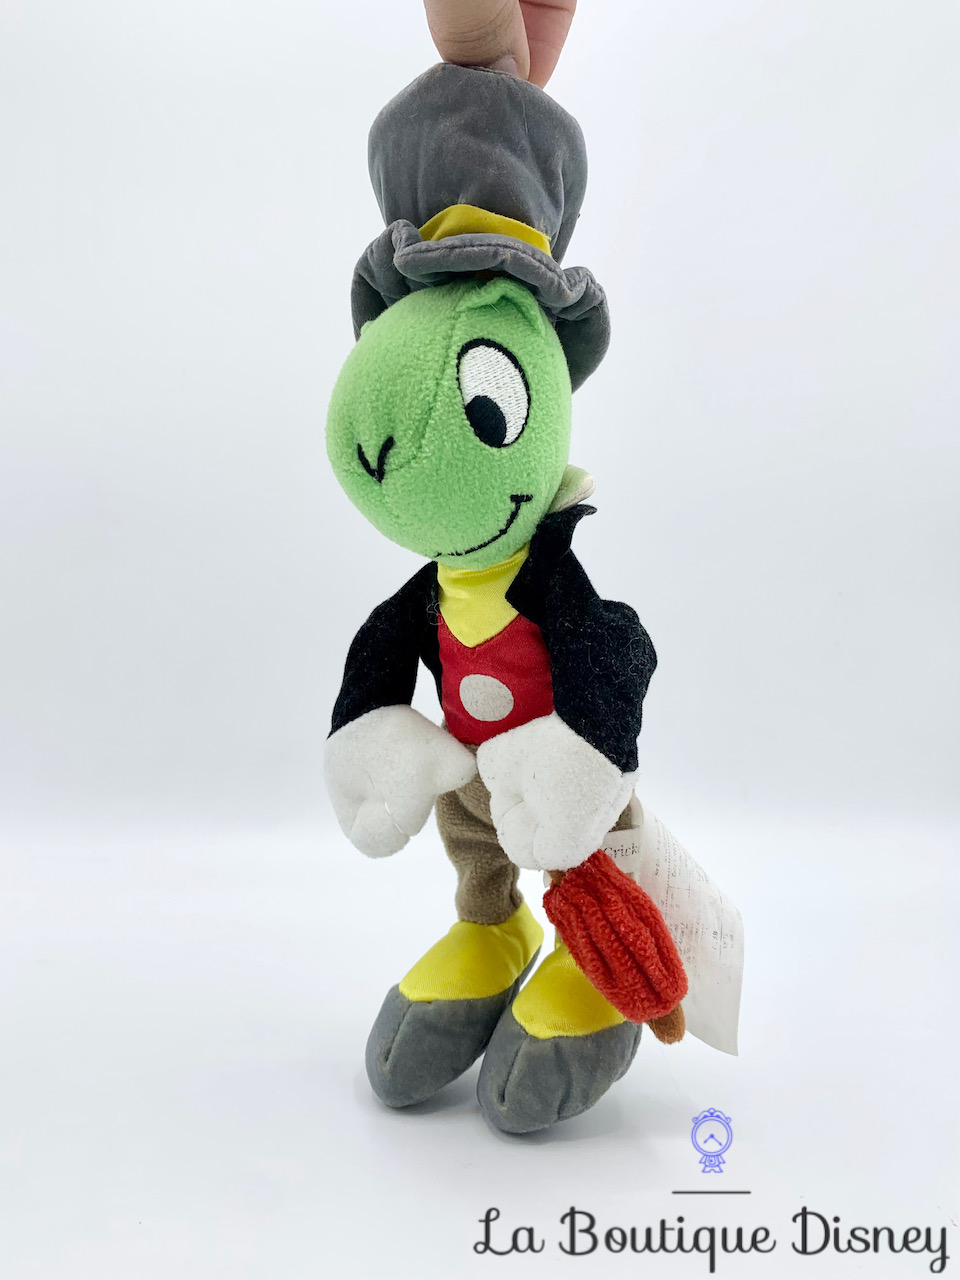 Peluche Jiminy Cricket Pinocchio Disney Store criquet vert conscience parapluie 25 cm